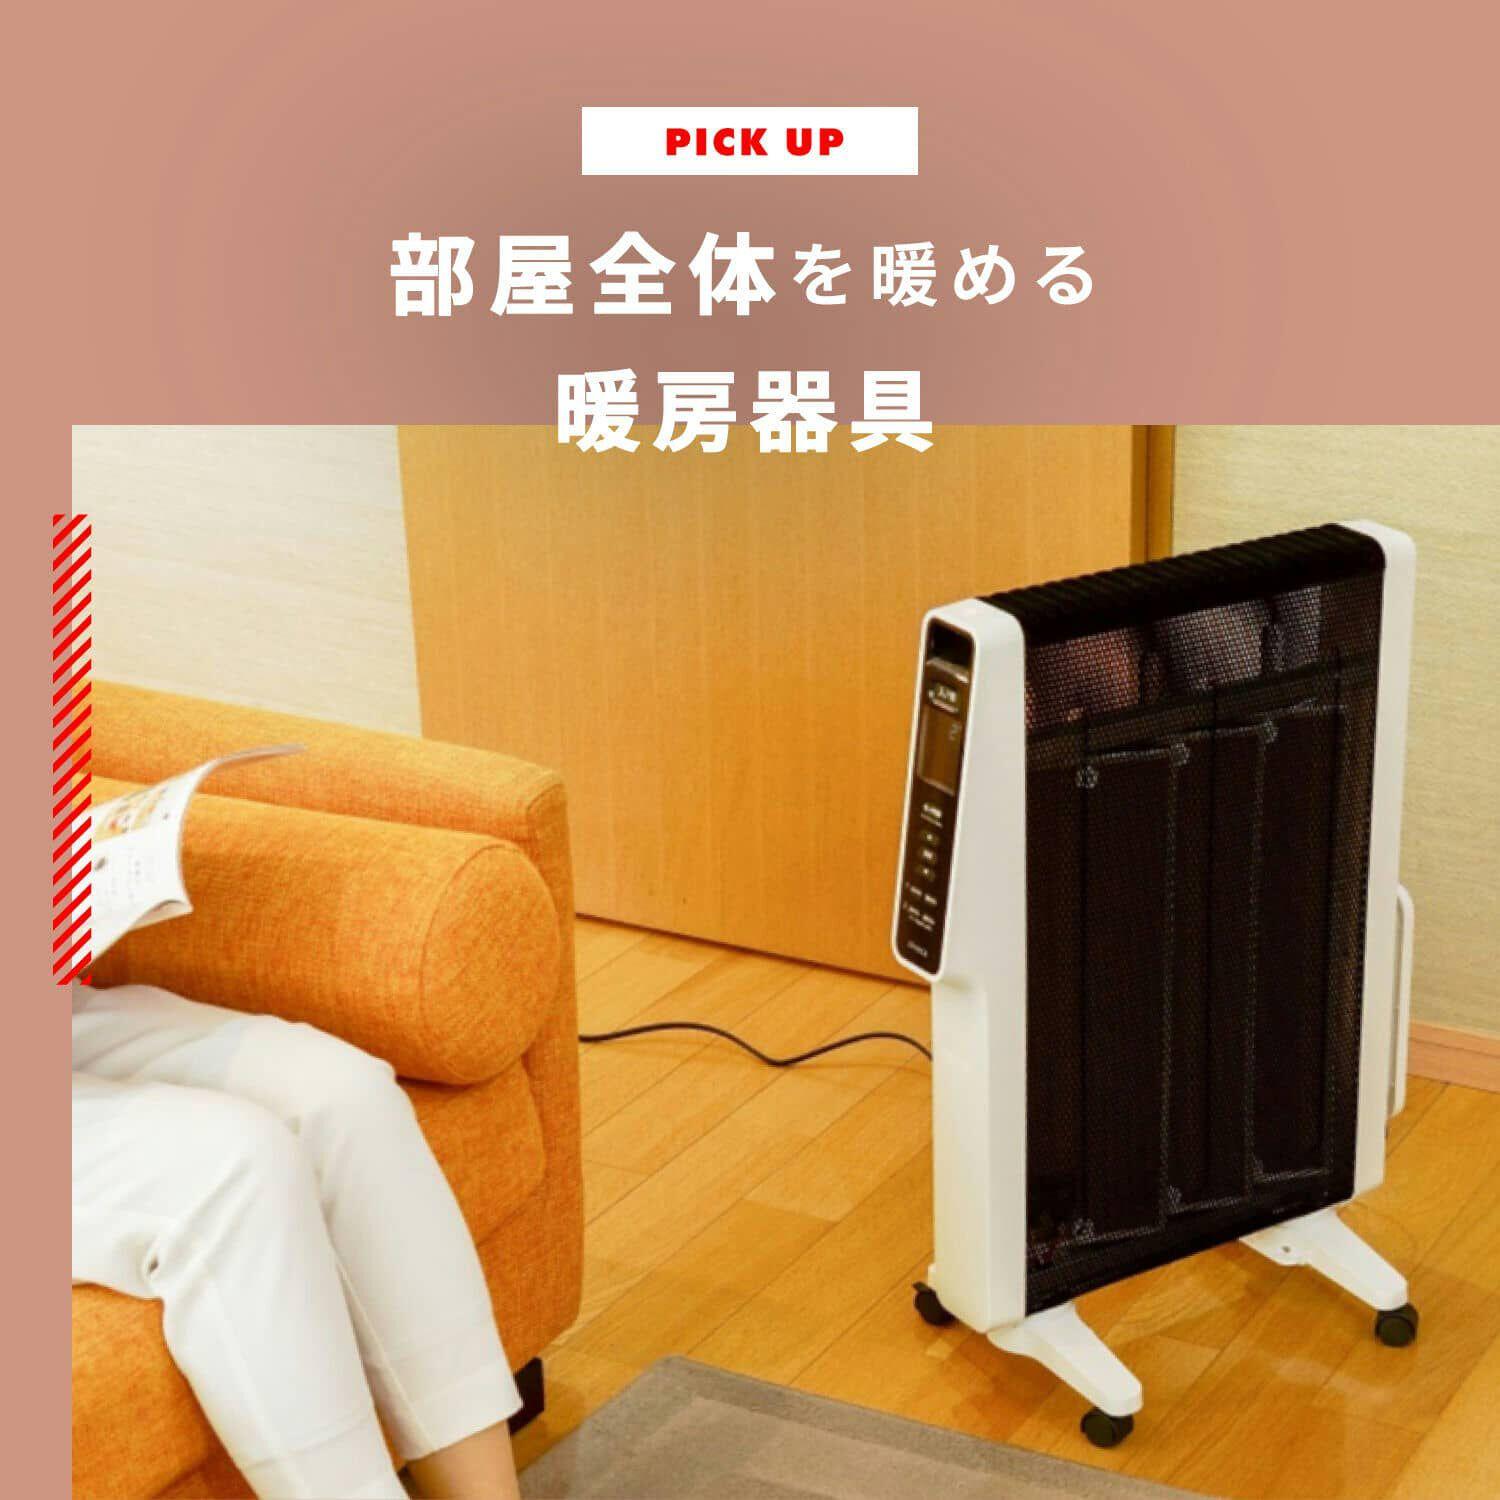 部屋全体を暖める暖房器具を賢く選ぼう